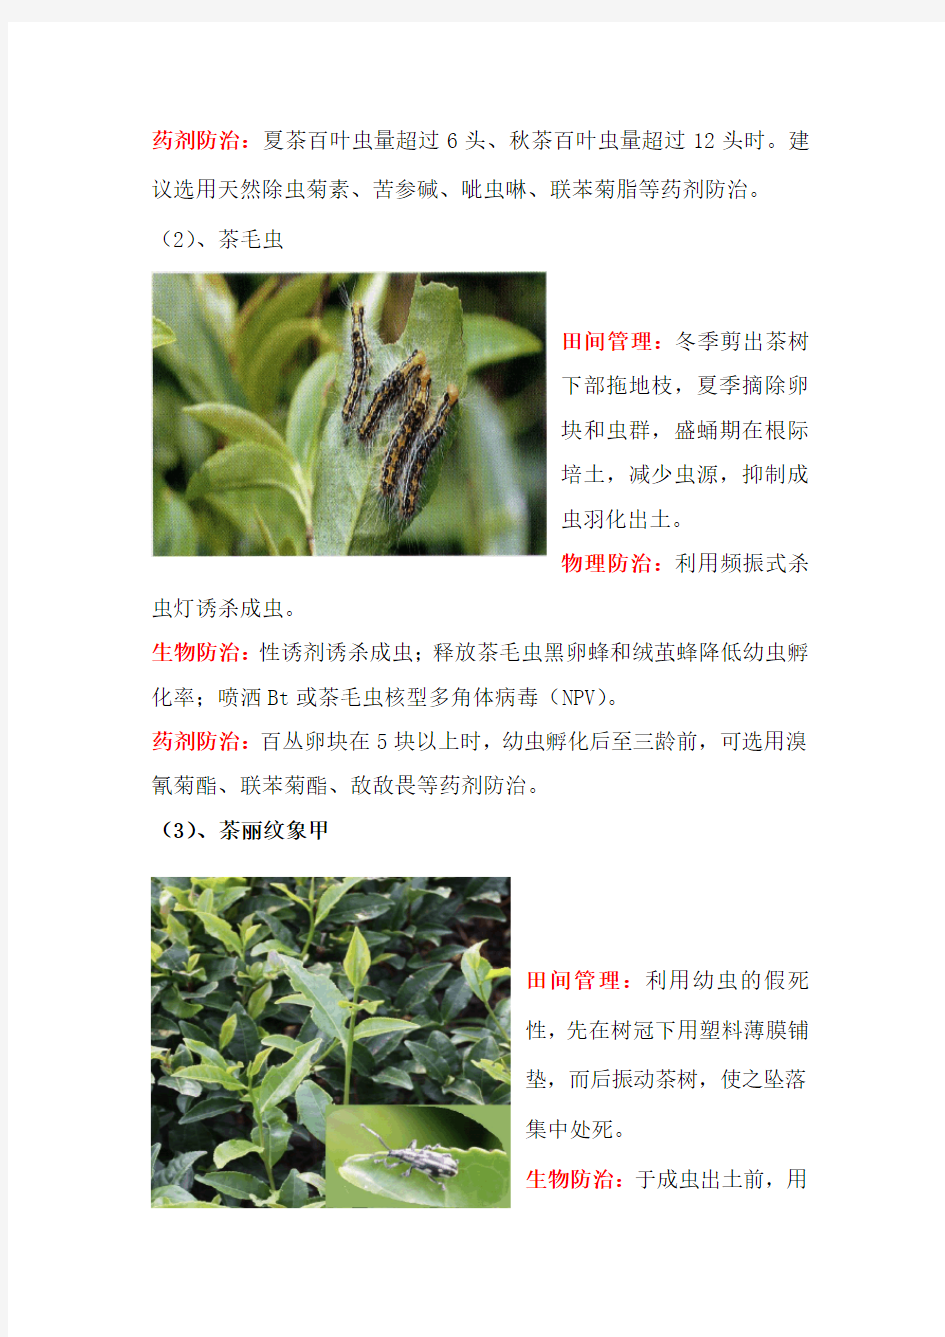 (推荐)茶树常见病虫害防治措施